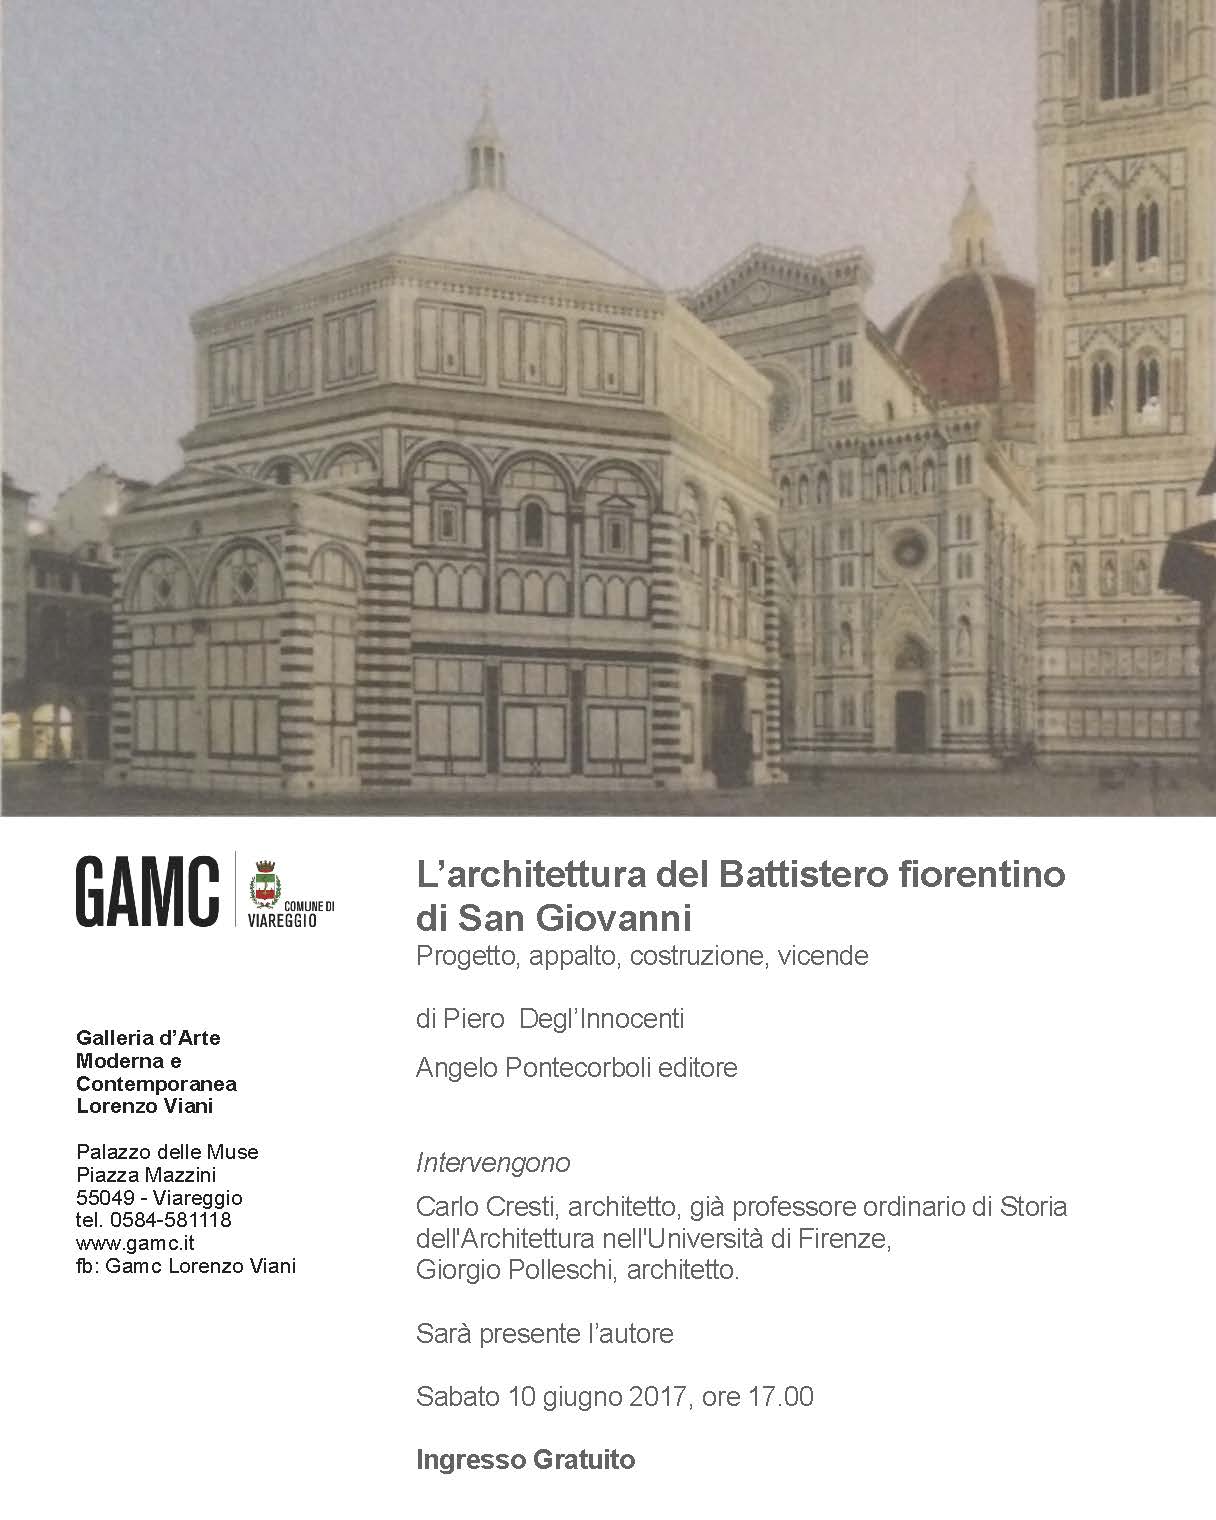 GAMC - Galleria di Arte Moderna - Mostra : Architettura del Battistero fiorentino di San Giovanni, immagine